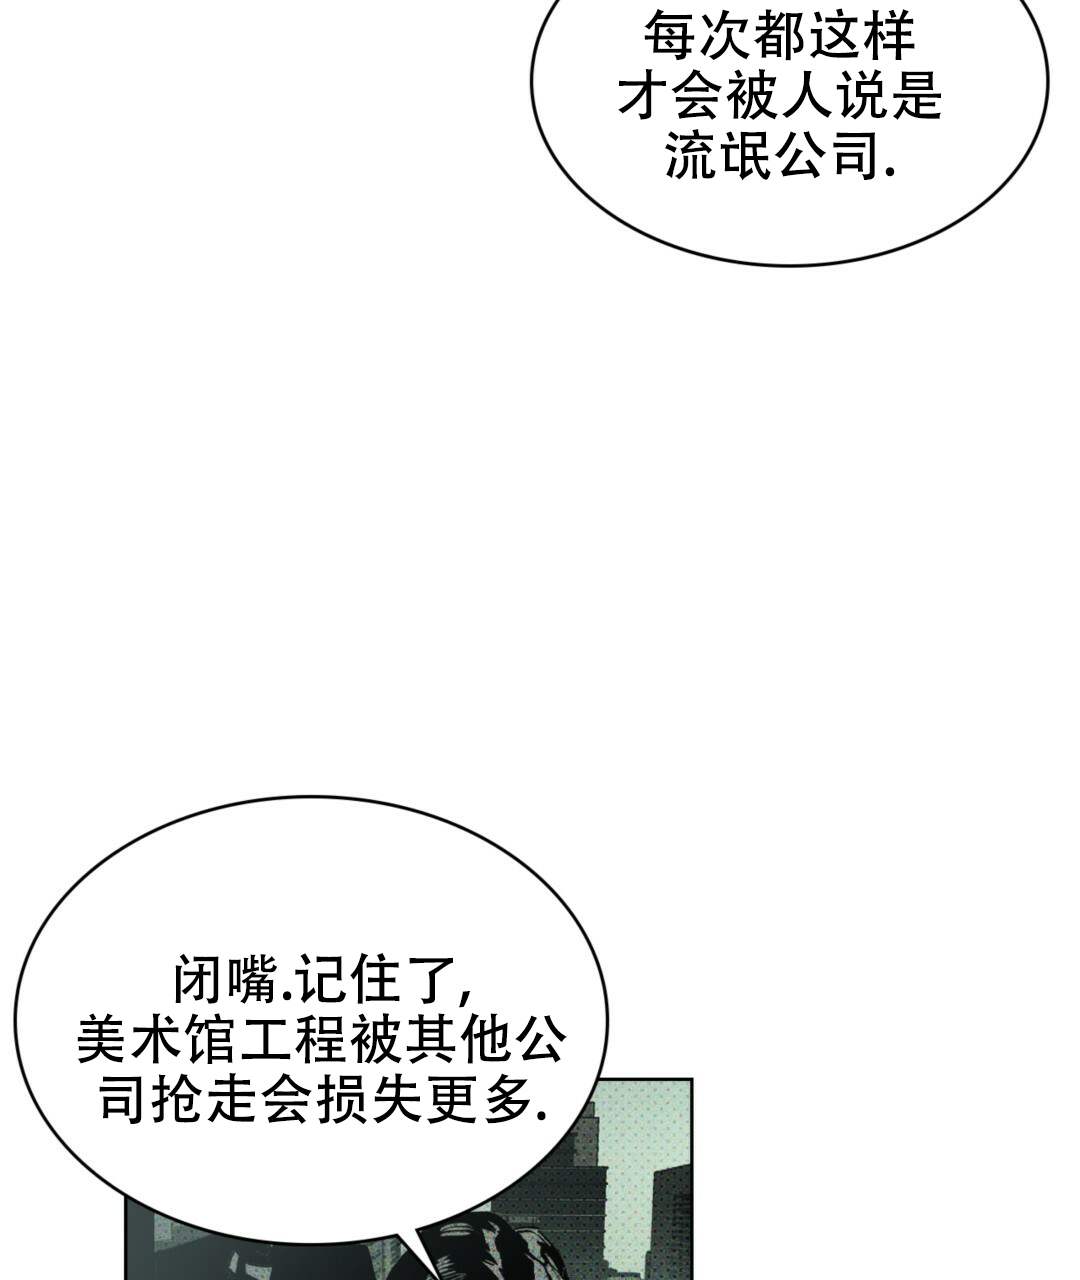 啵乐官网免费漫画8